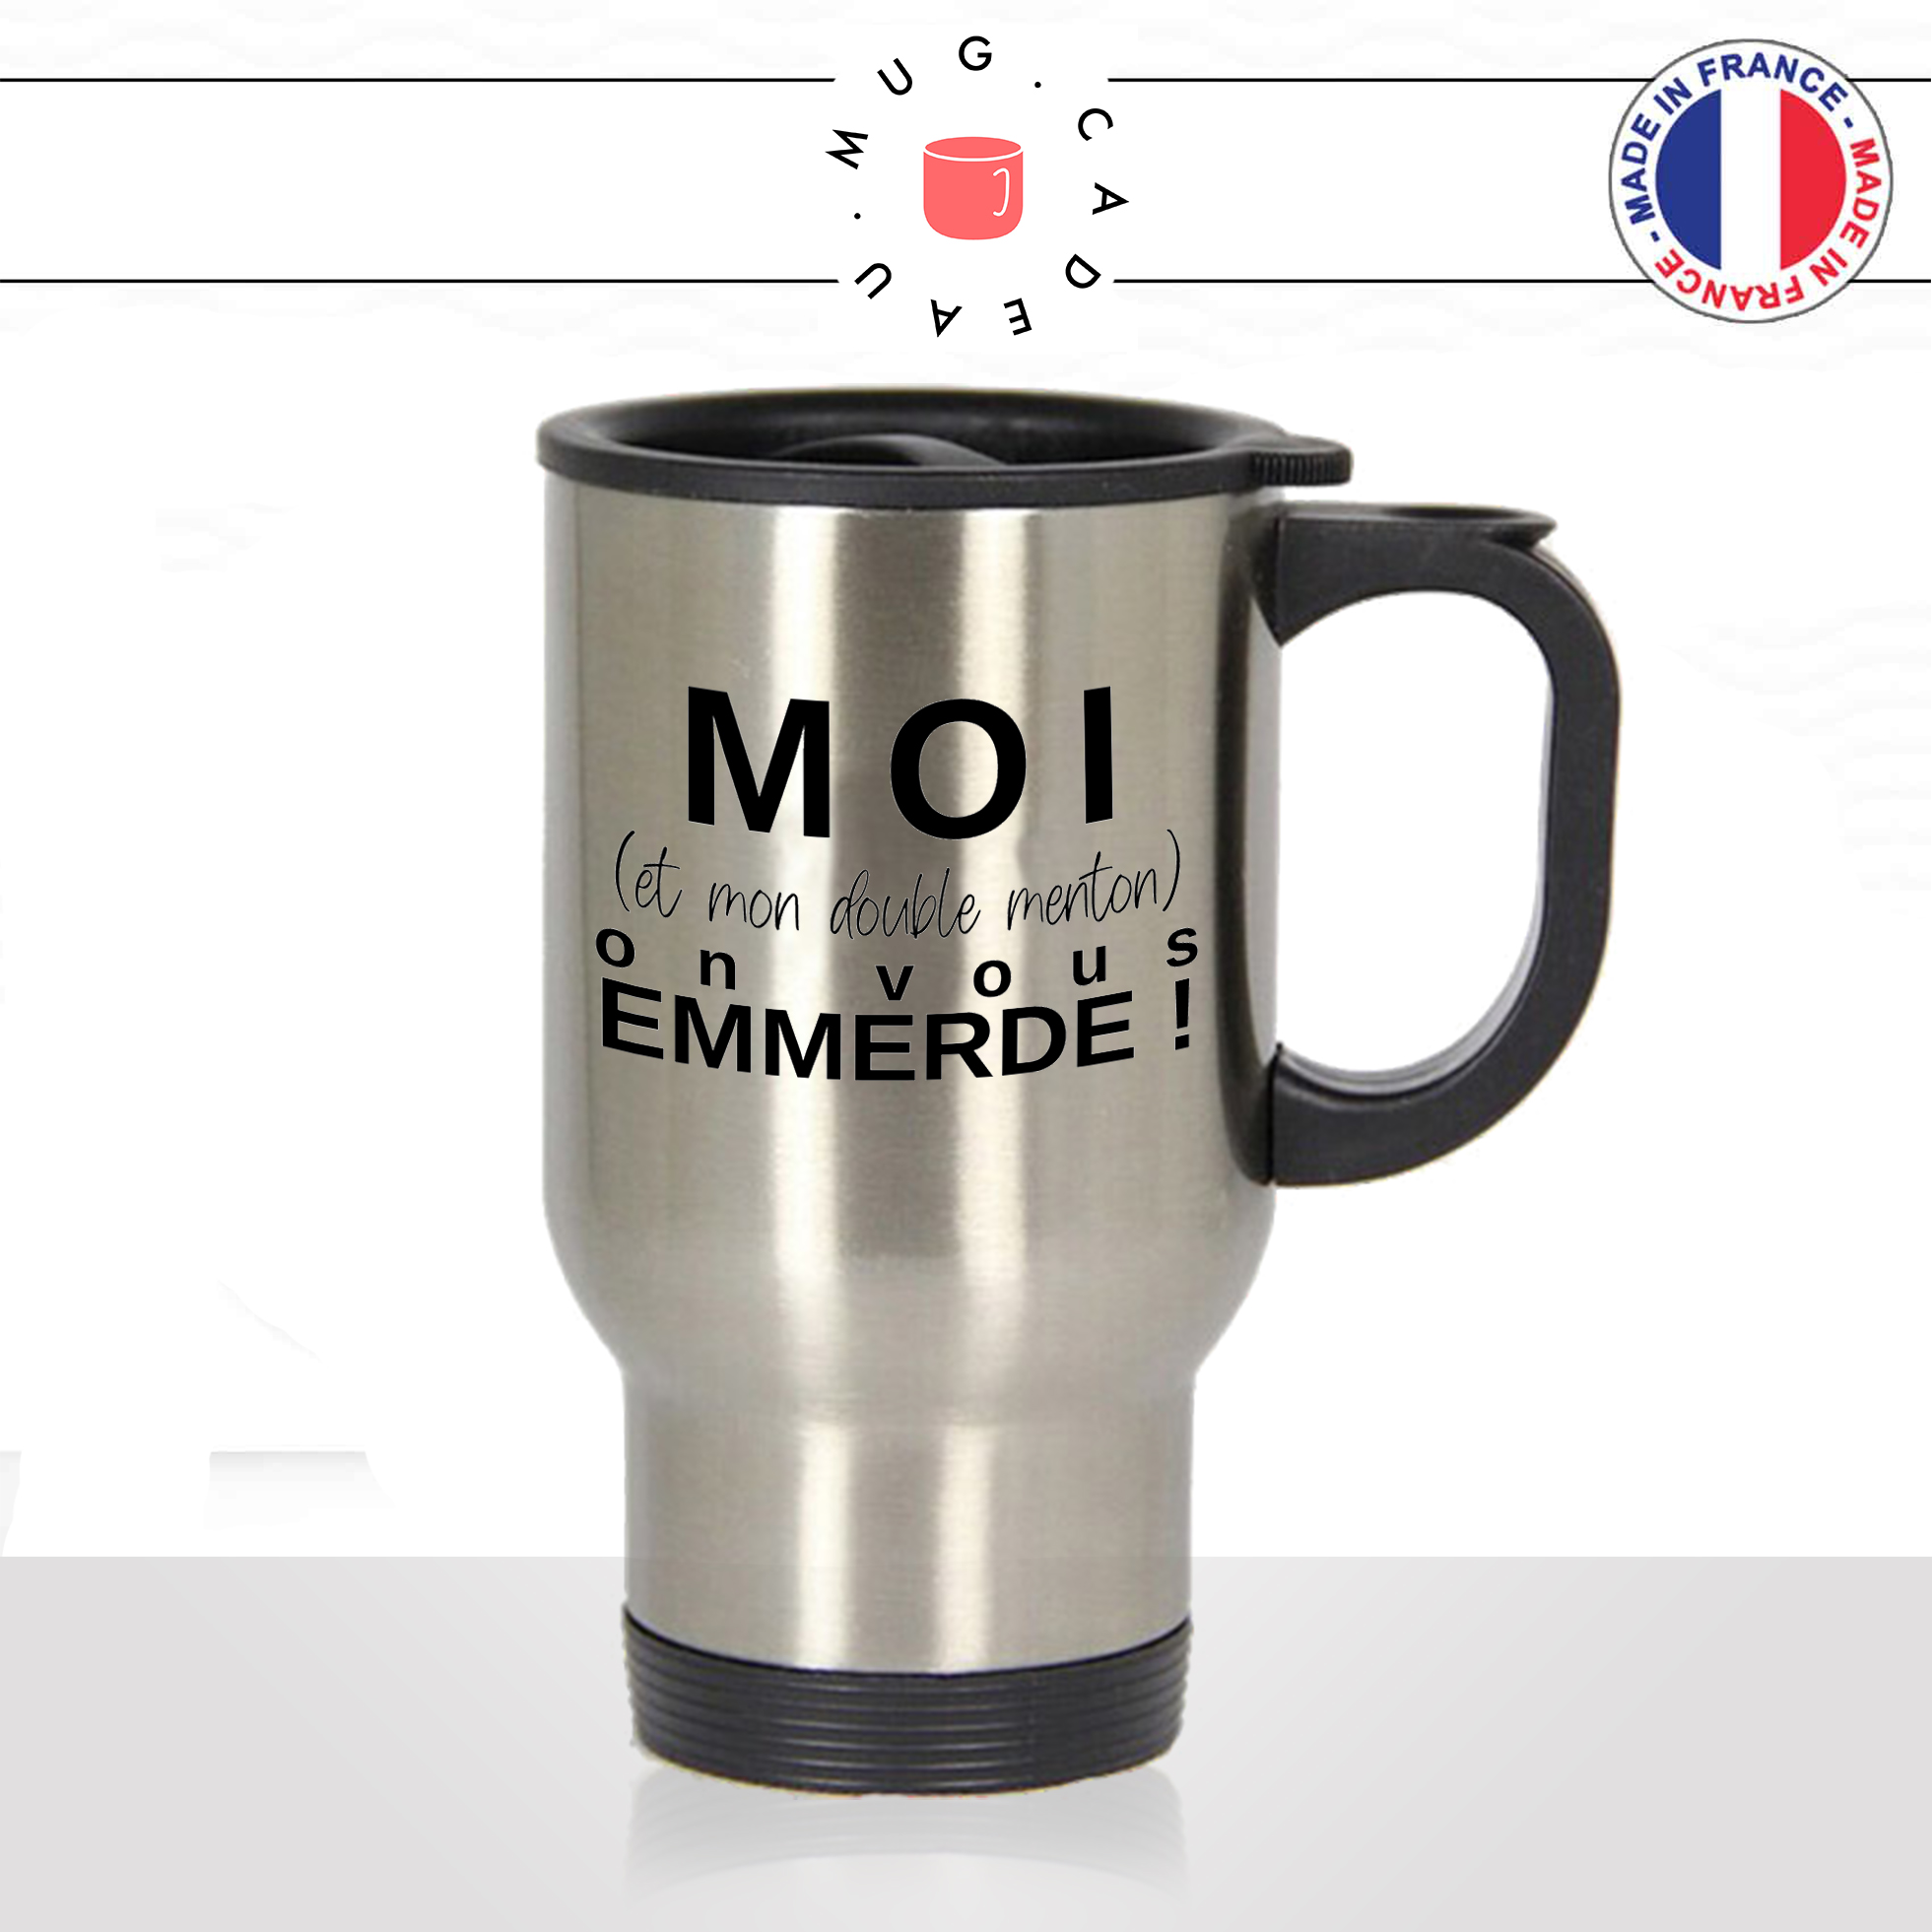 mug-tasse-thermos-voyage-idée-cadeau-personnalisé-moi-et-mon-double-menton-on-vous-emmerde-regime-gourmande-offrir-original-fun-2